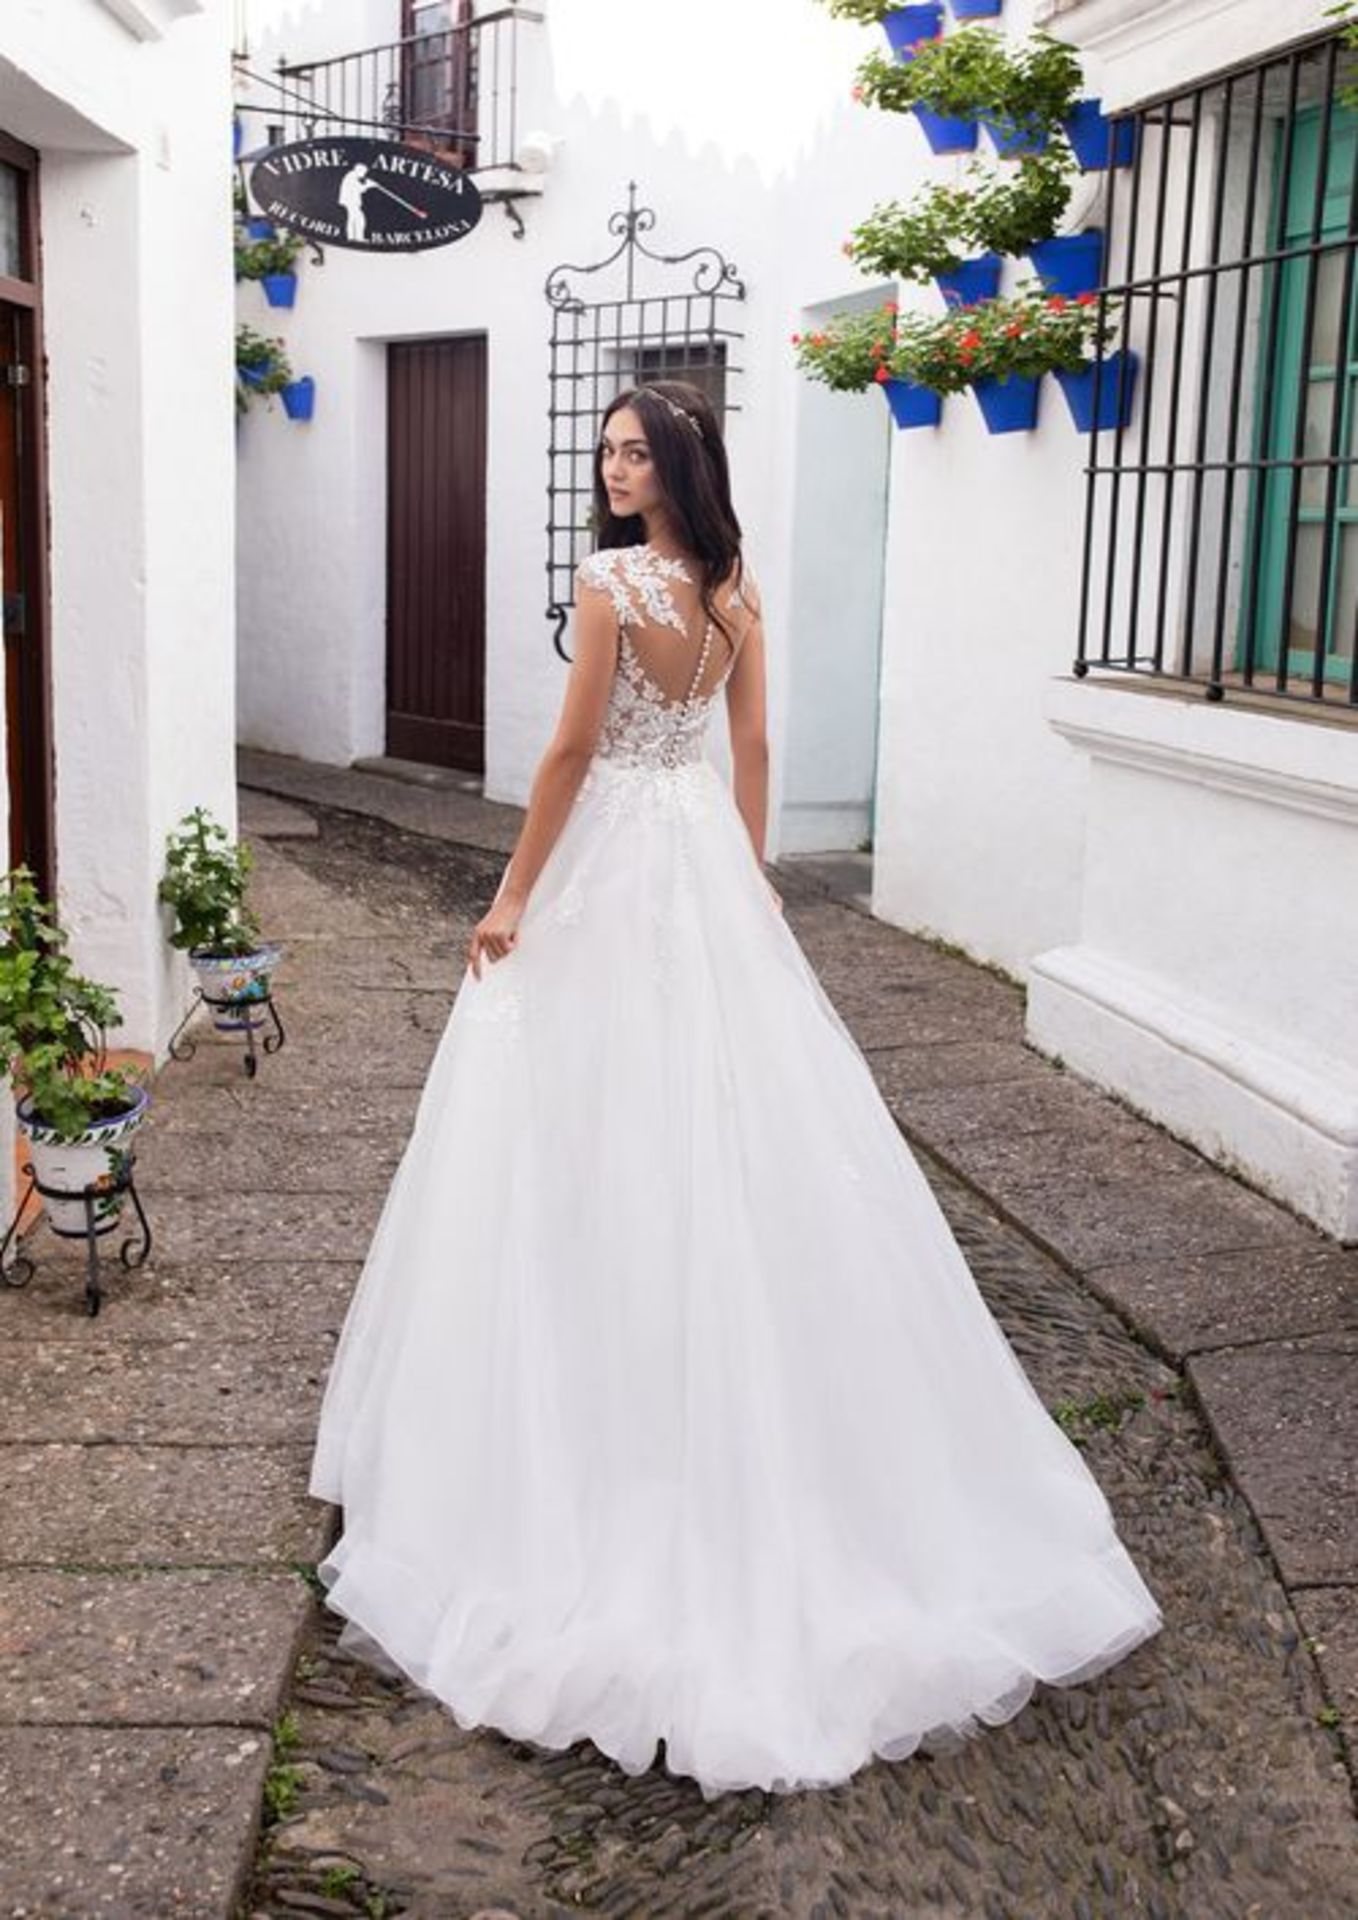 1 x PRONOVIAS Stunning Lace And Chiffon Full Skirted Designer Wedding Dress RRP £1,800 UK12 - Image 2 of 7